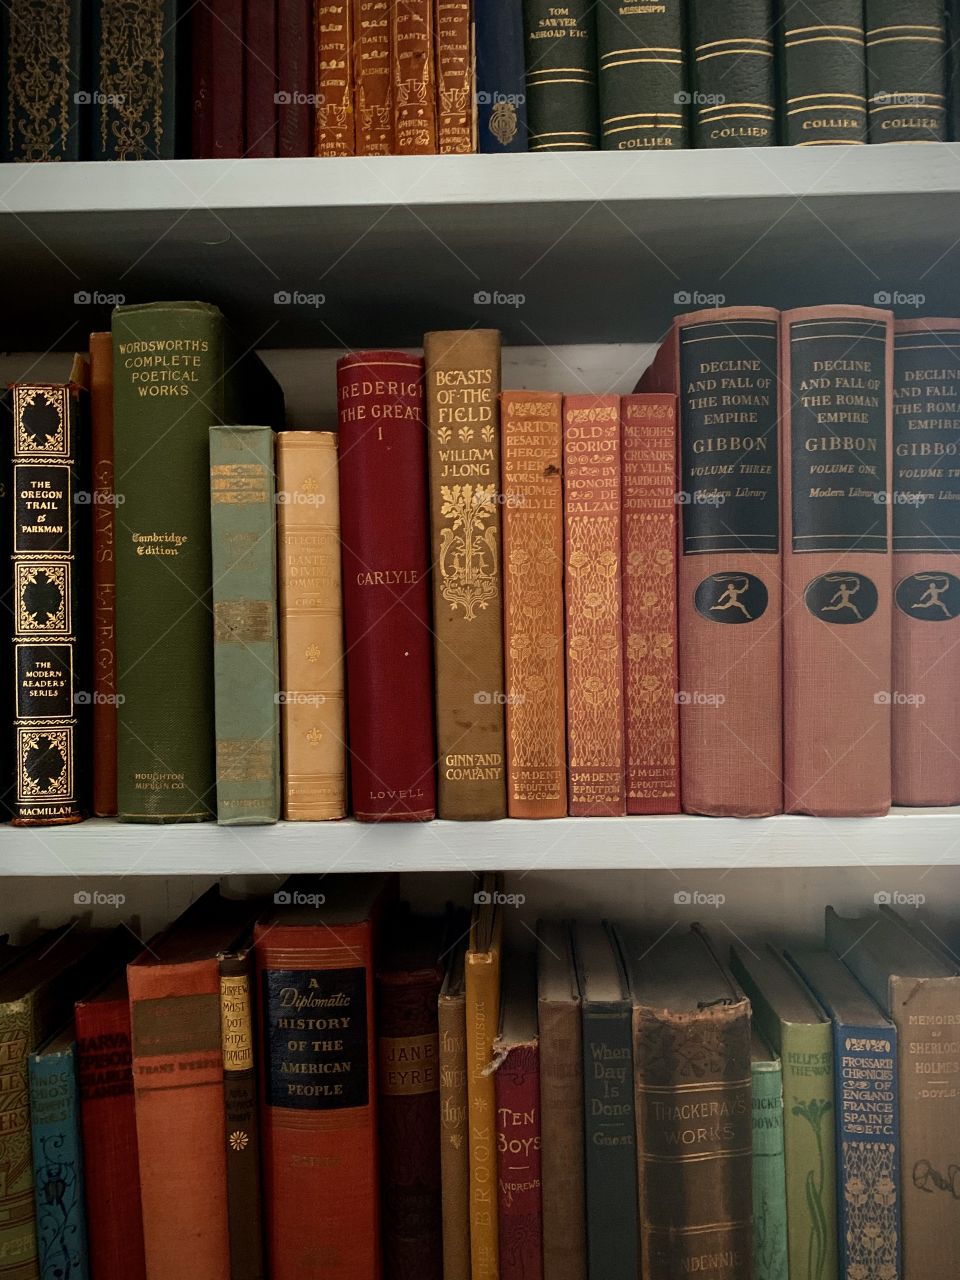 Shelves of old books